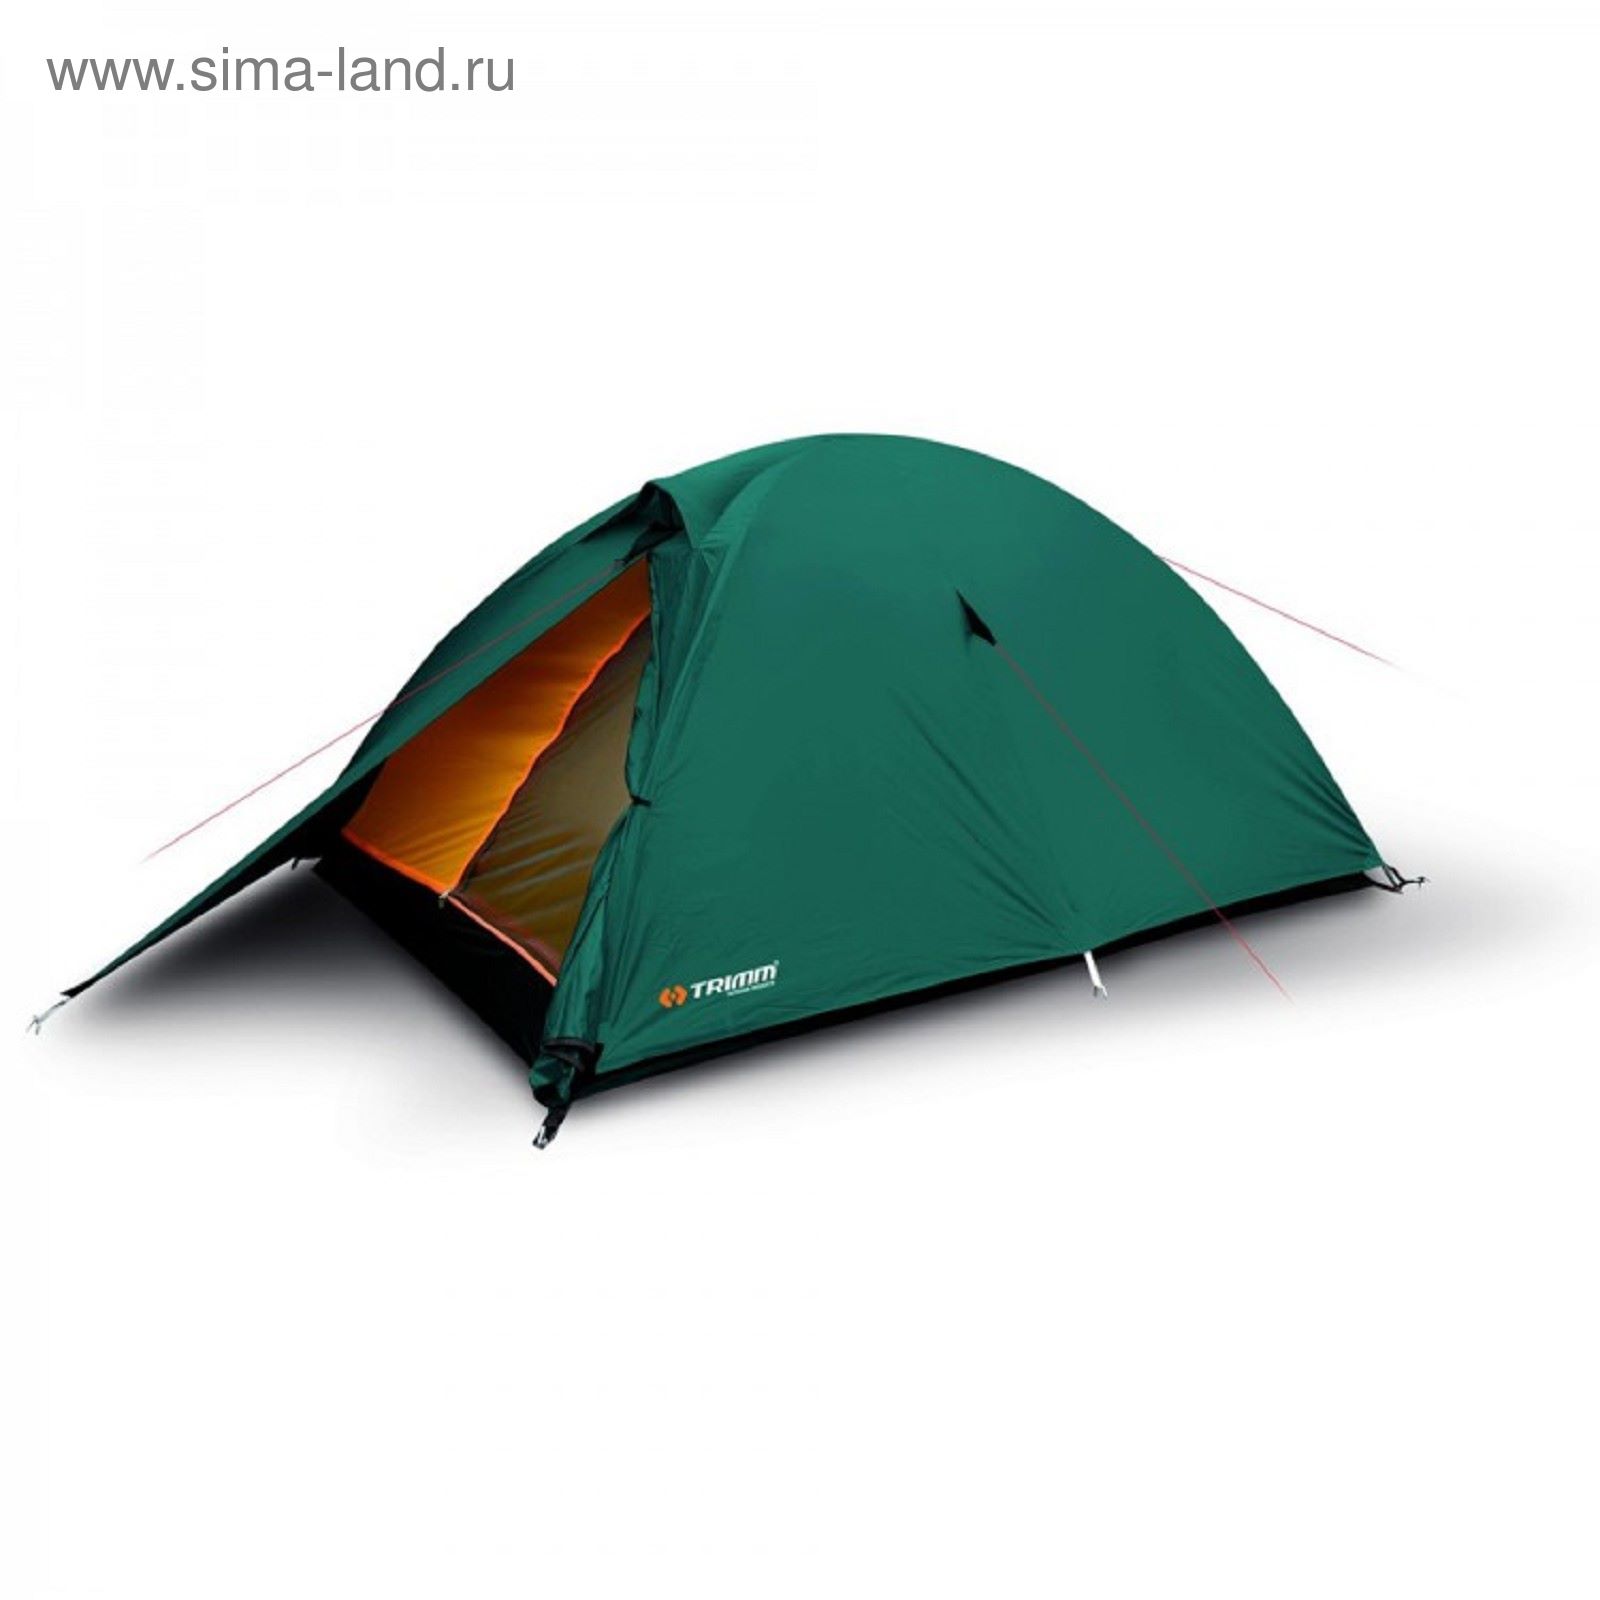 Купить палатку 2х. Палатка Trimm Comet. Палатка Trimm Trekking Pack DSL. Палатка Trimm Hudson. Палатка Trimm Hudson зеленый.